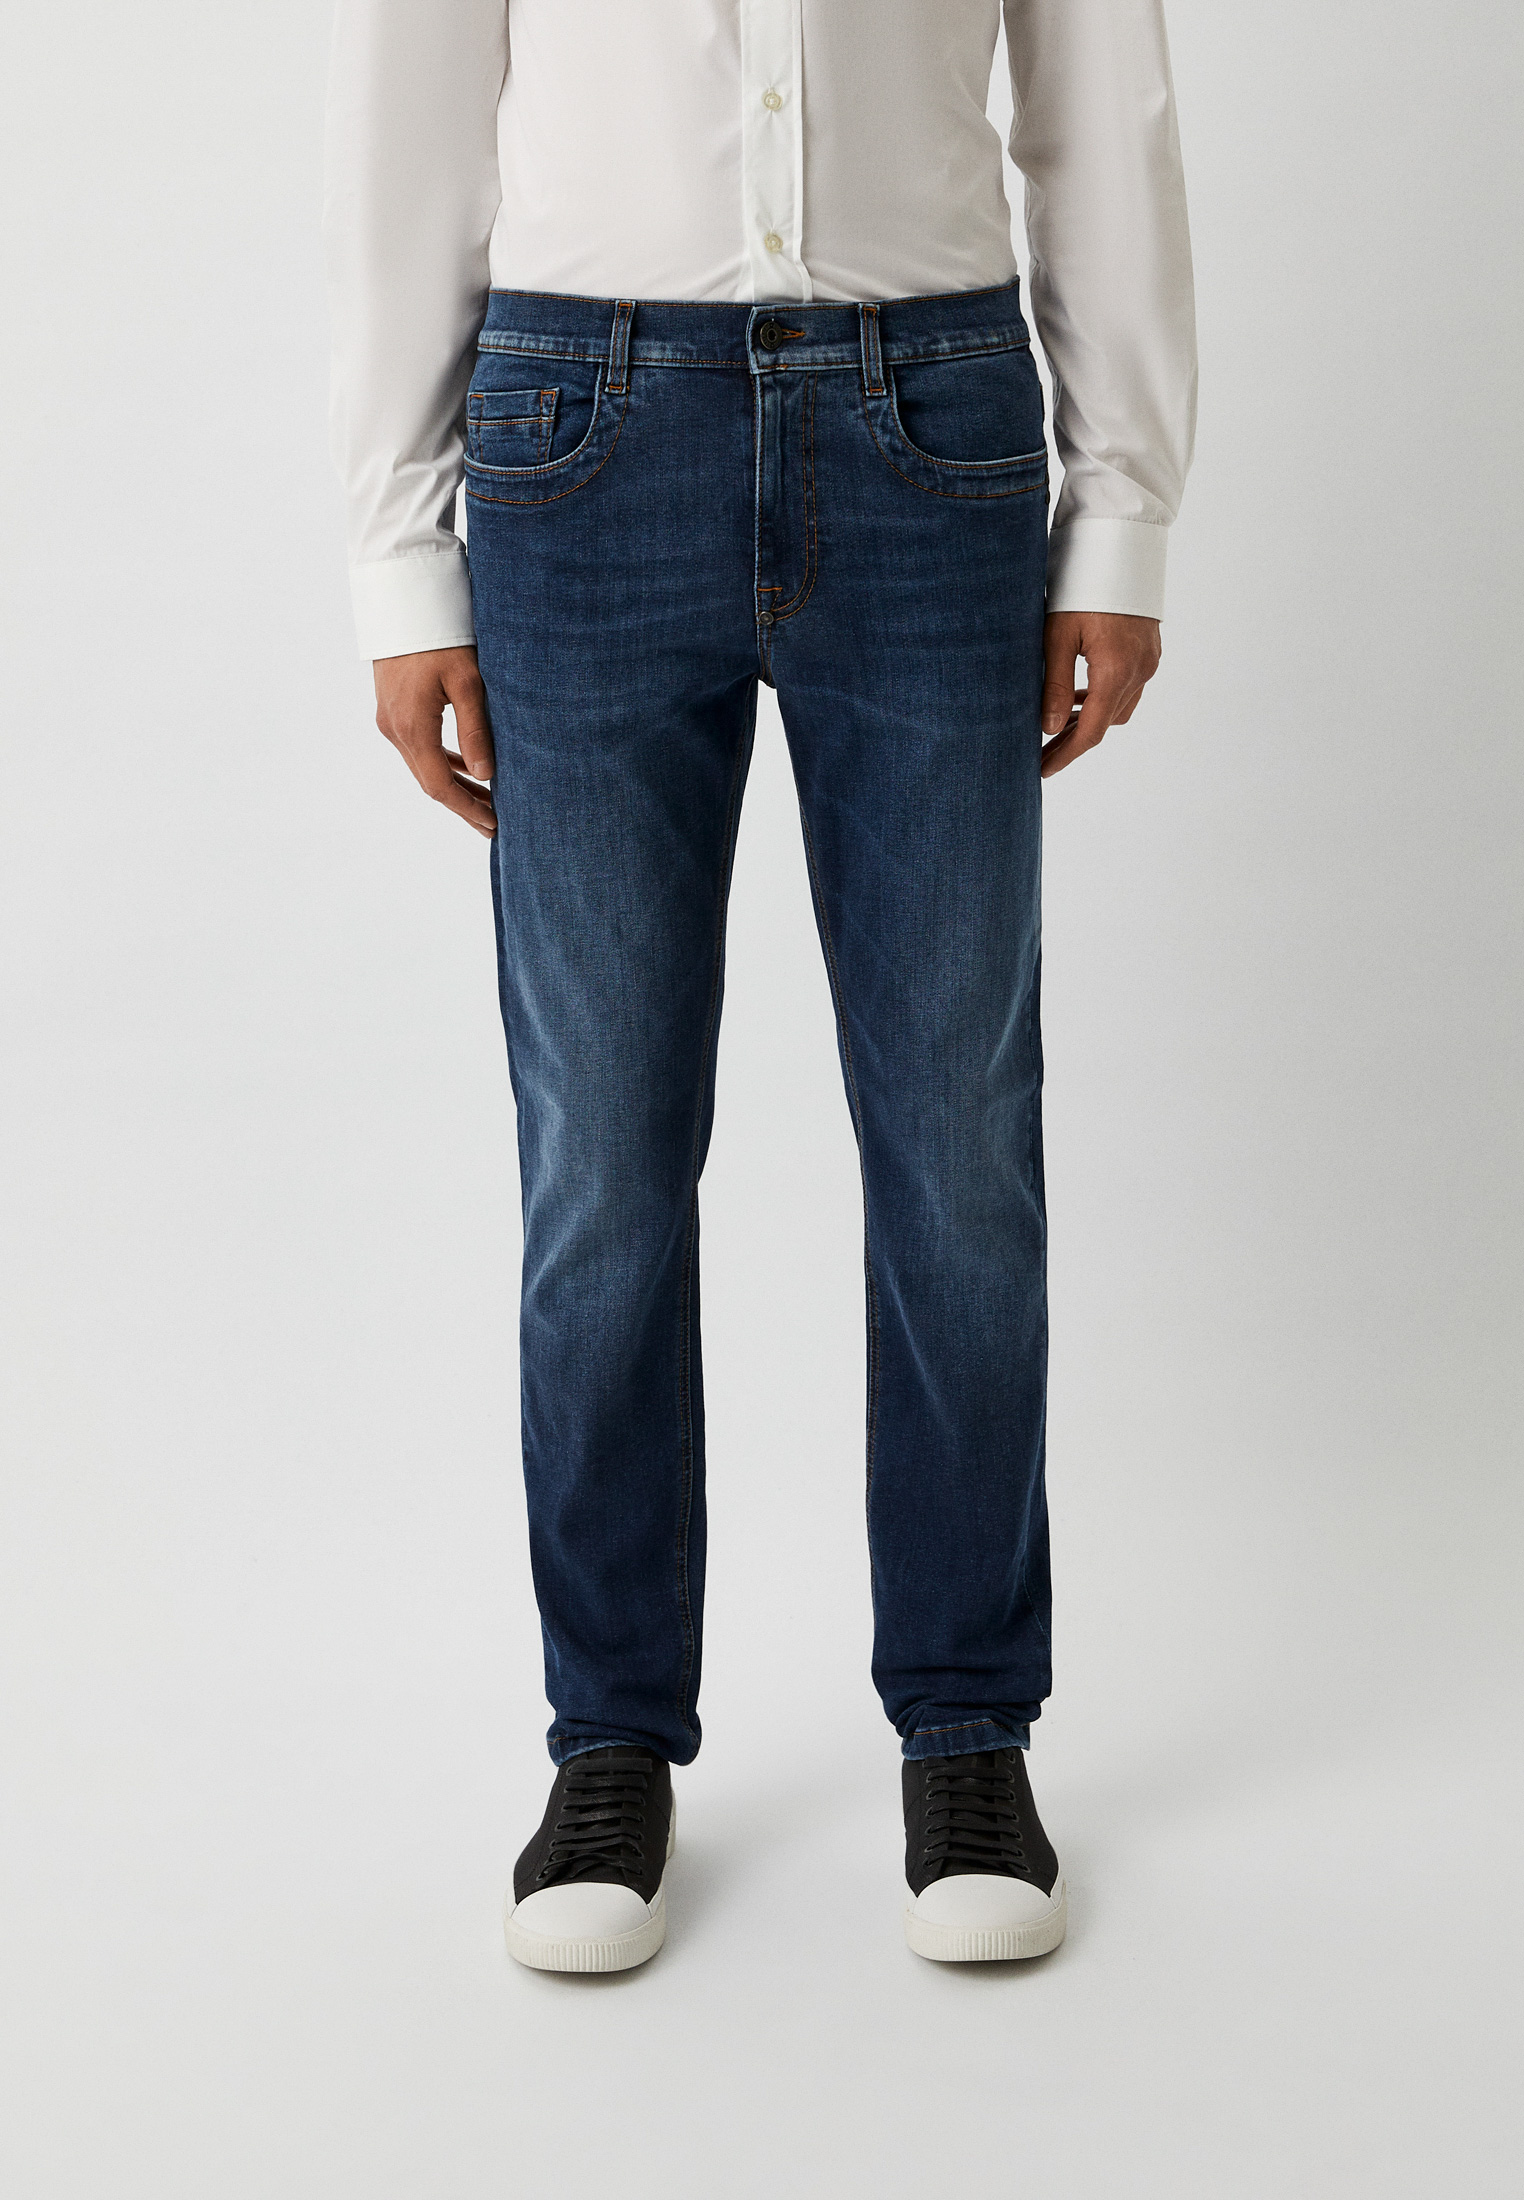 Мужские прямые джинсы Bikkembergs (Биккембергс) C Q 101 1B S 3511: изображение 5